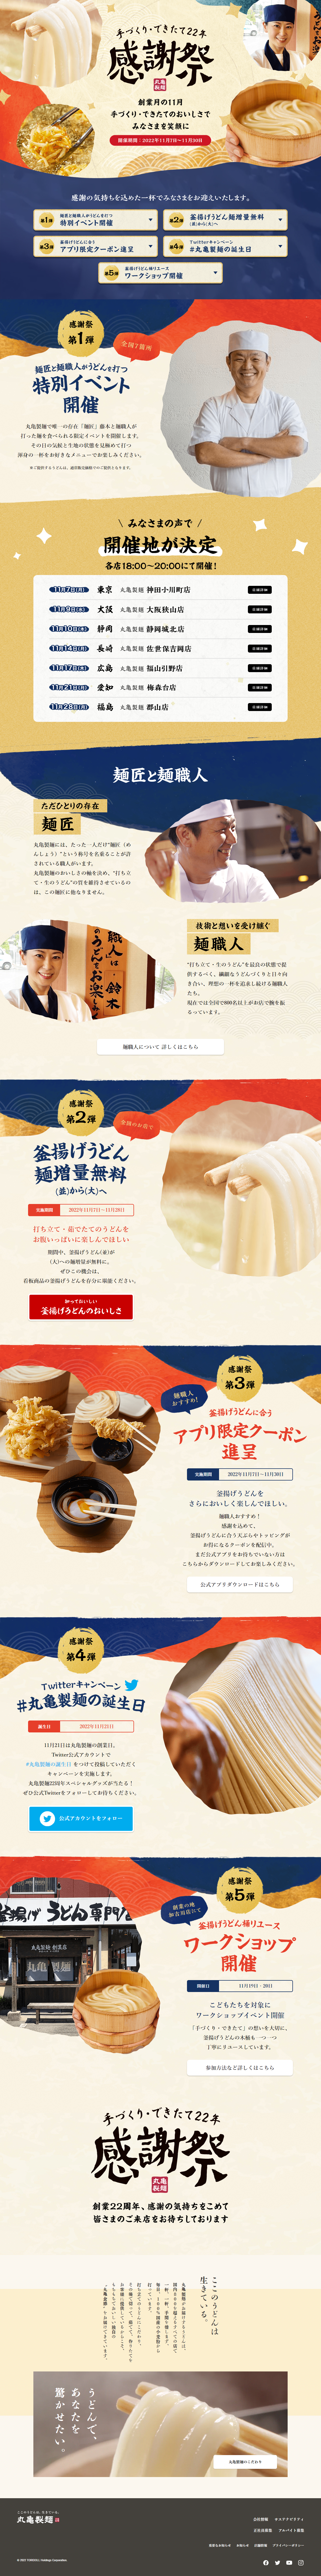 丸亀製麺感謝祭_pc_1